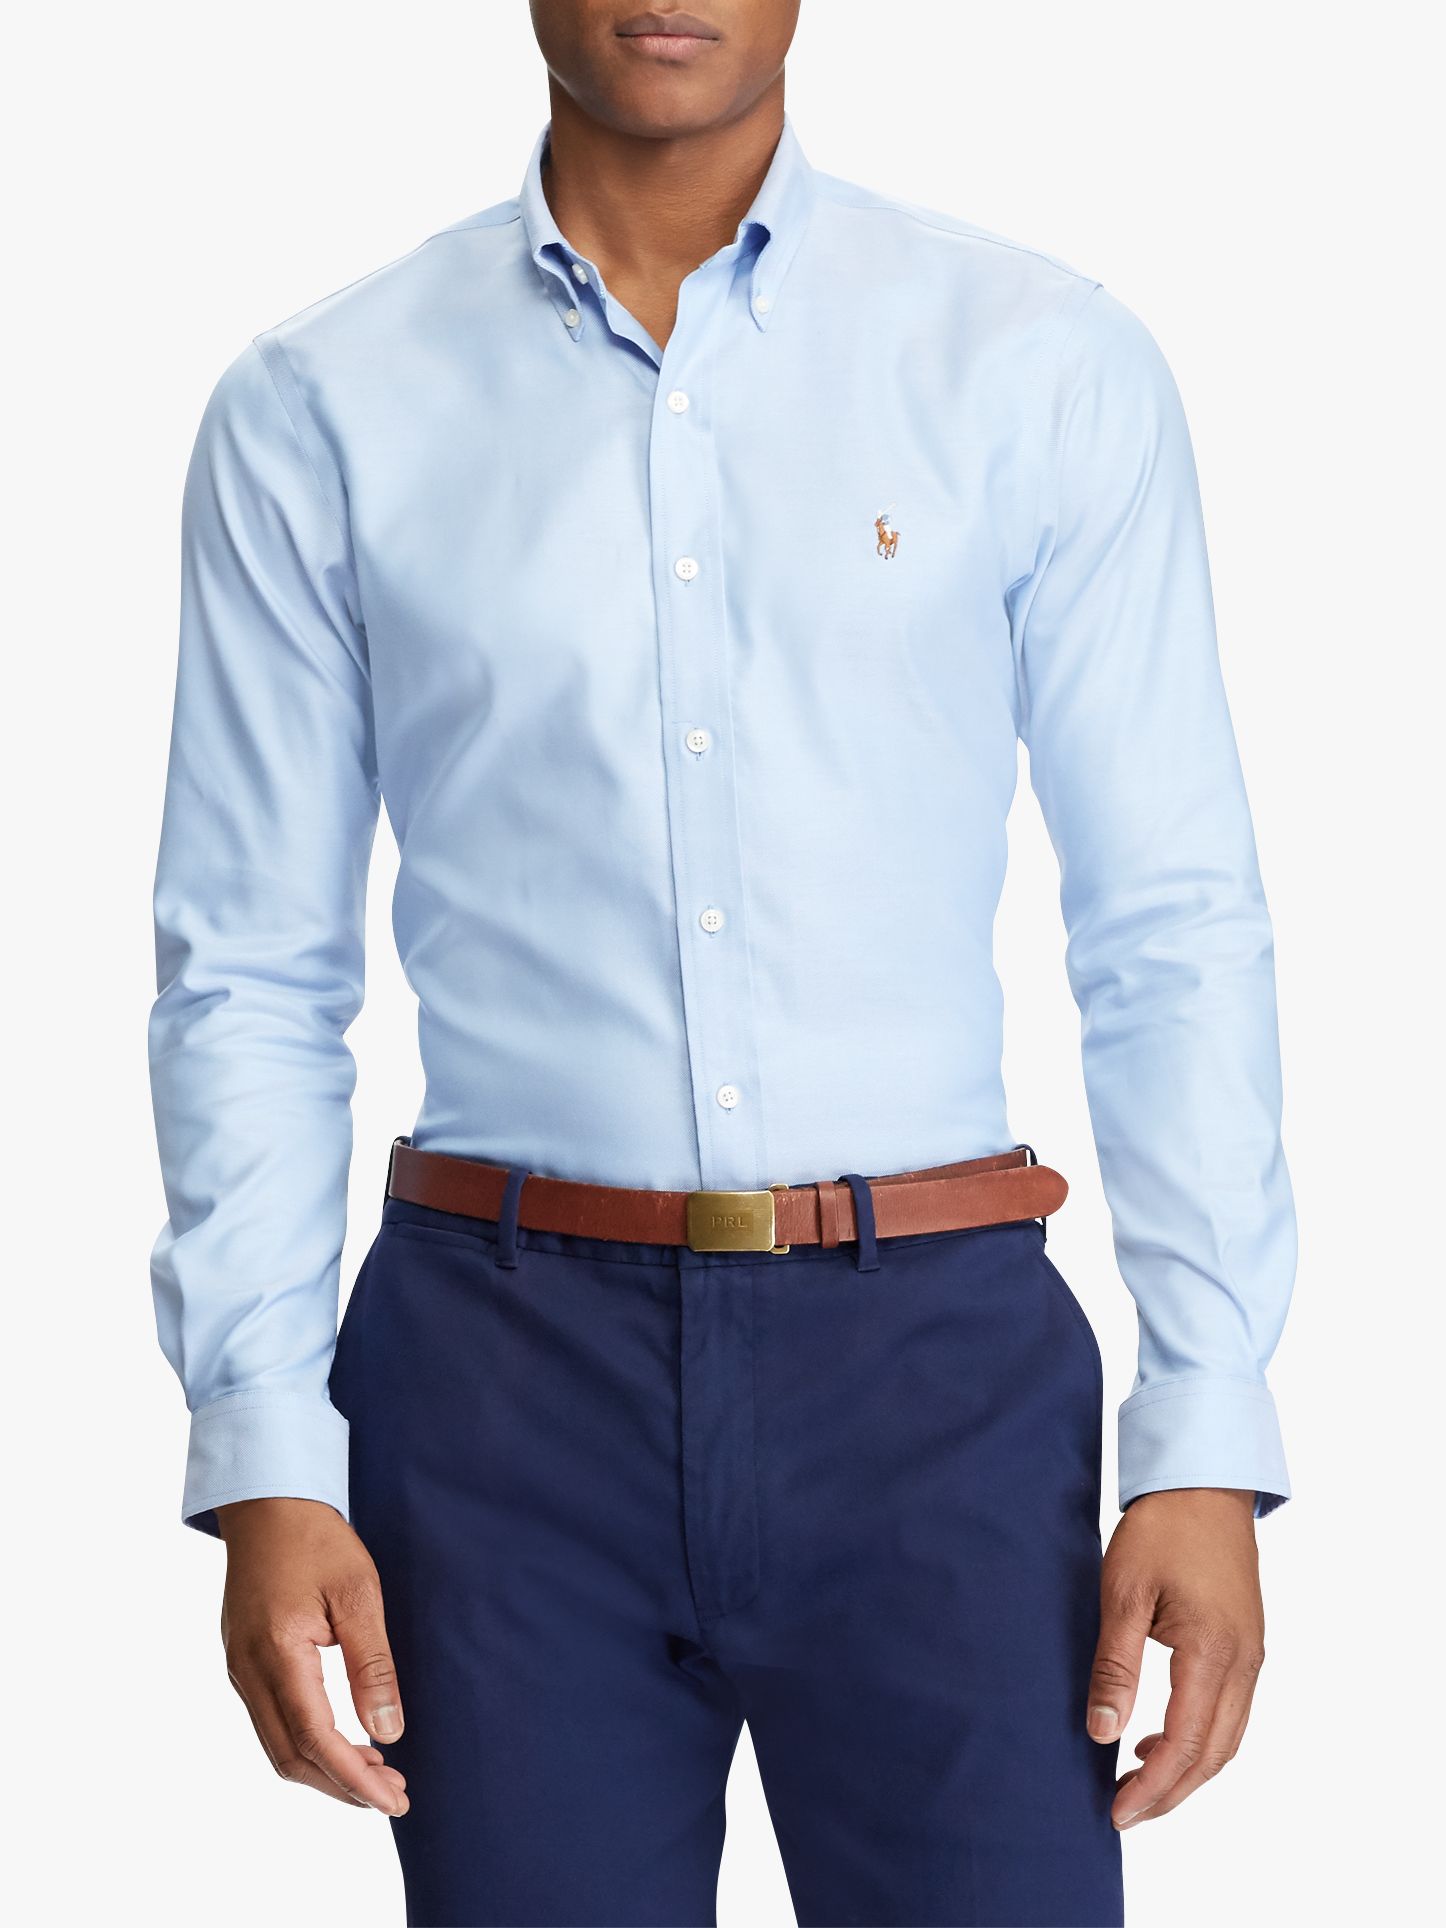 mens light blue ralph lauren shirt